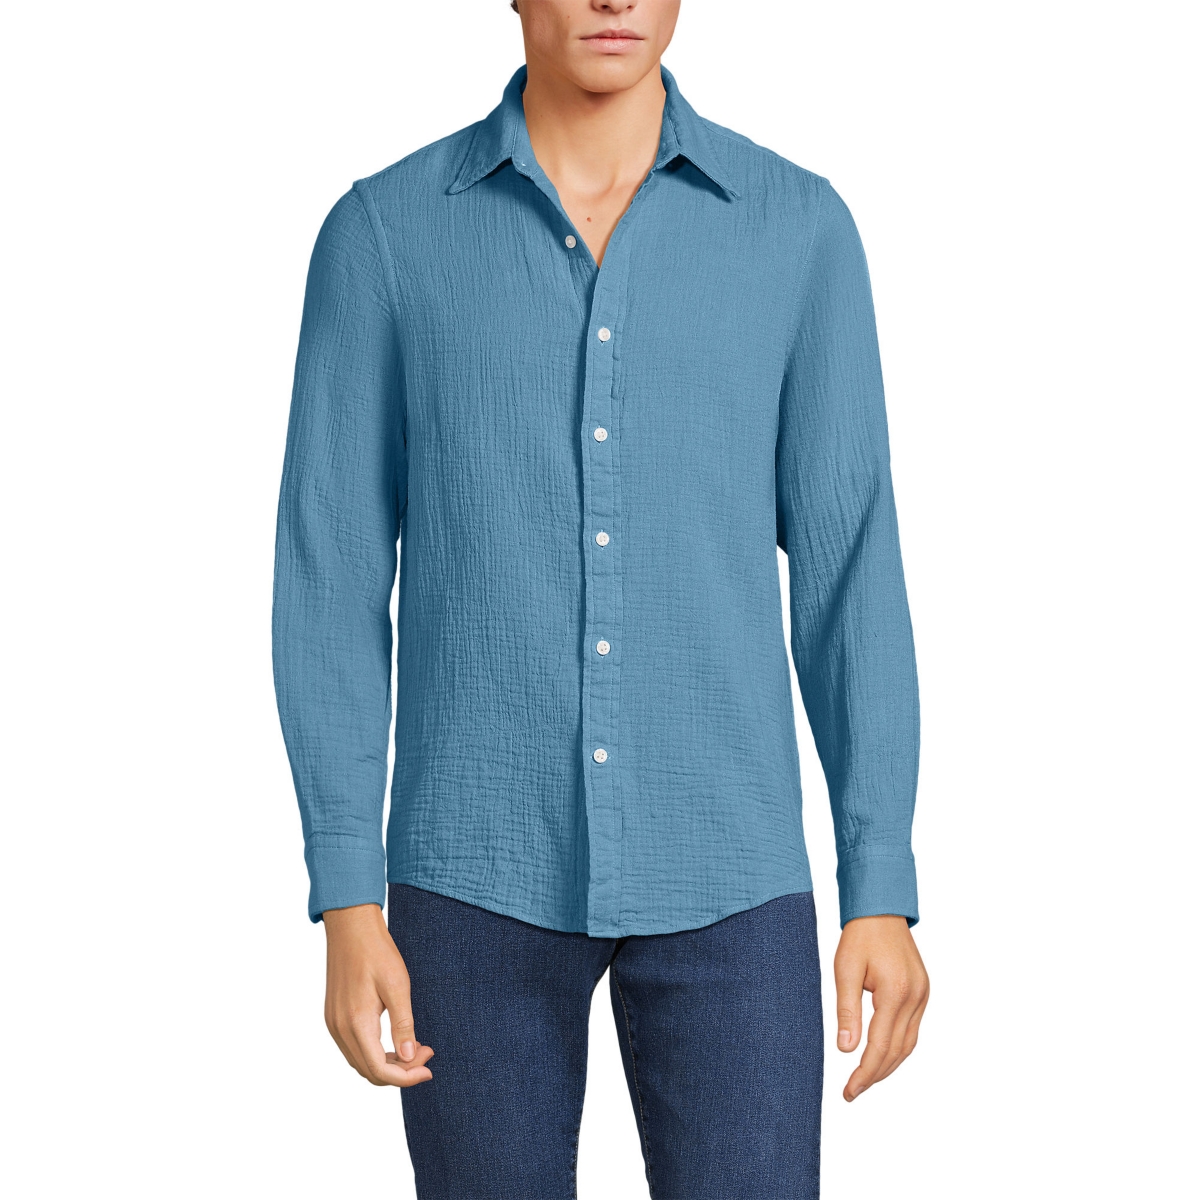 Men's Long Sleeve Gauze Shirt - Muted blue